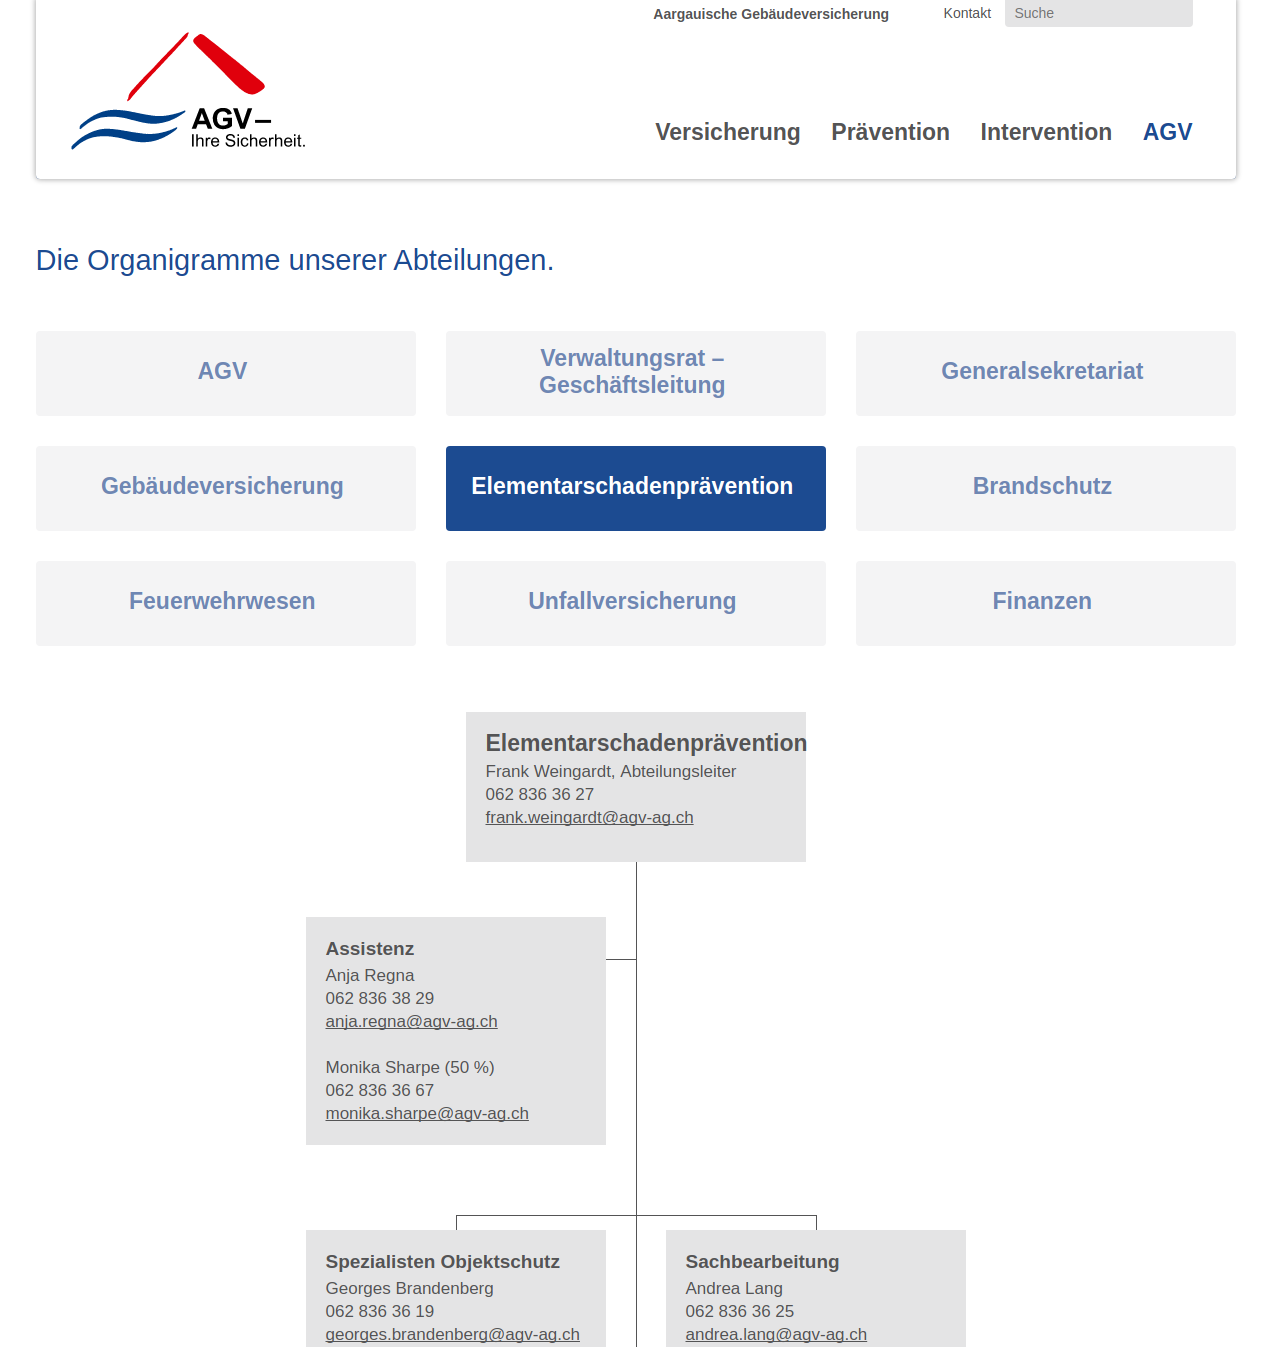 Organigram, fully editable / Argauische Gebäudeversicherung